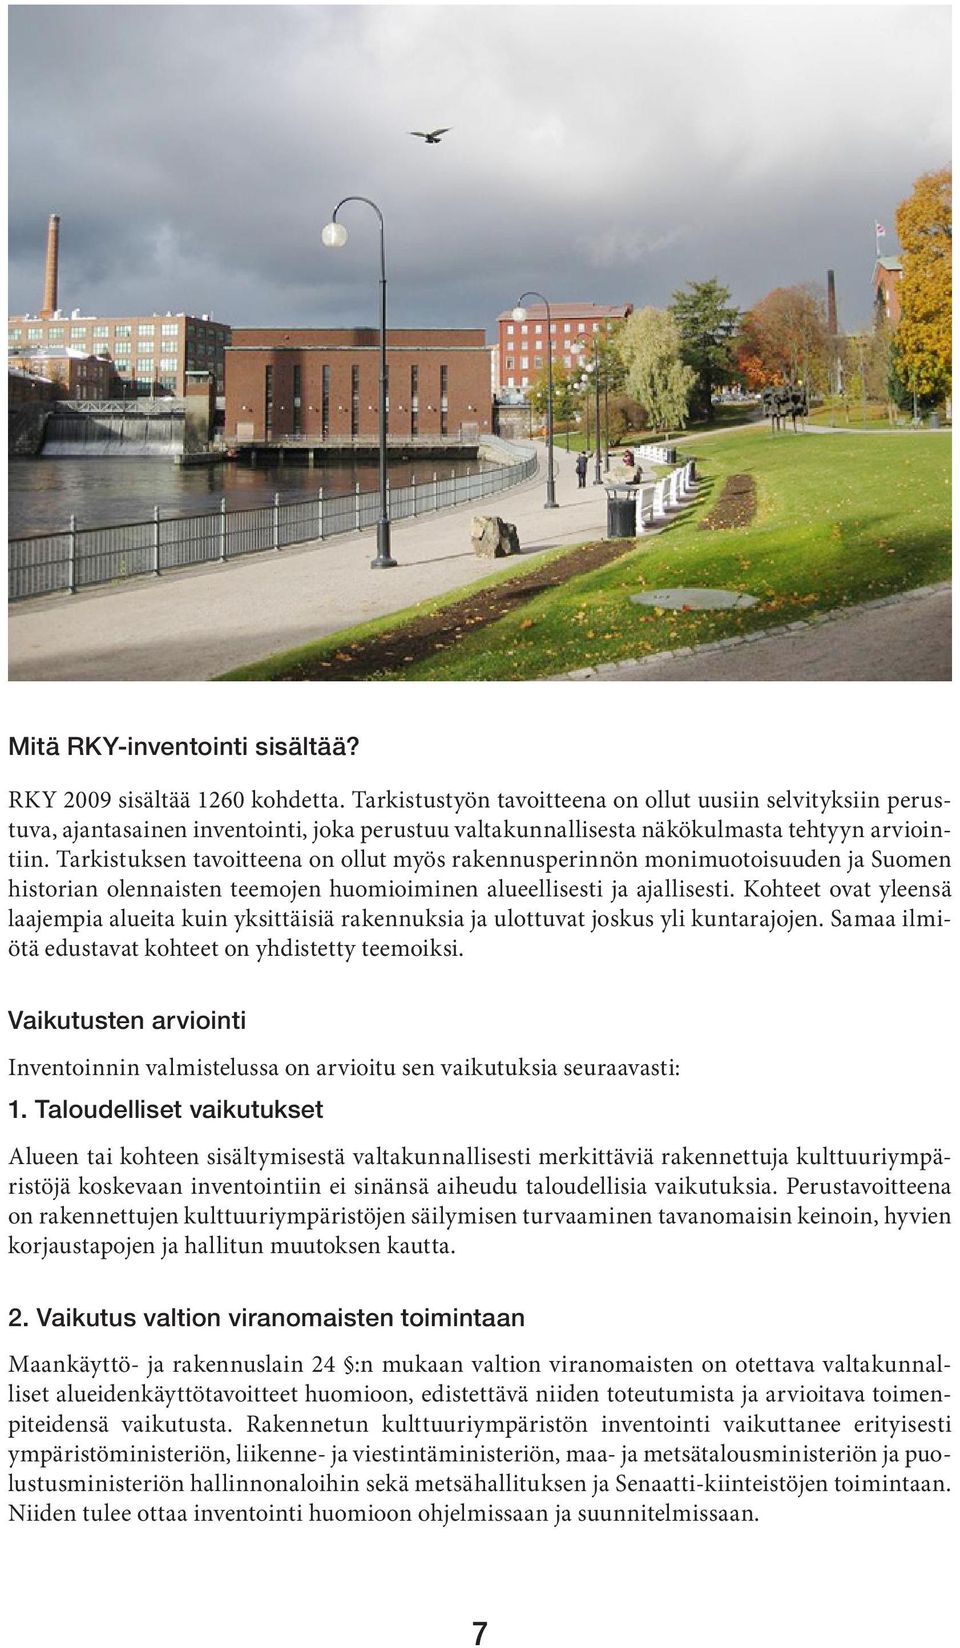 Tarkistuksen tavoitteena on ollut myös rakennusperinnön monimuotoisuuden ja Suomen historian olennaisten teemojen huomioiminen alueellisesti ja ajallisesti.